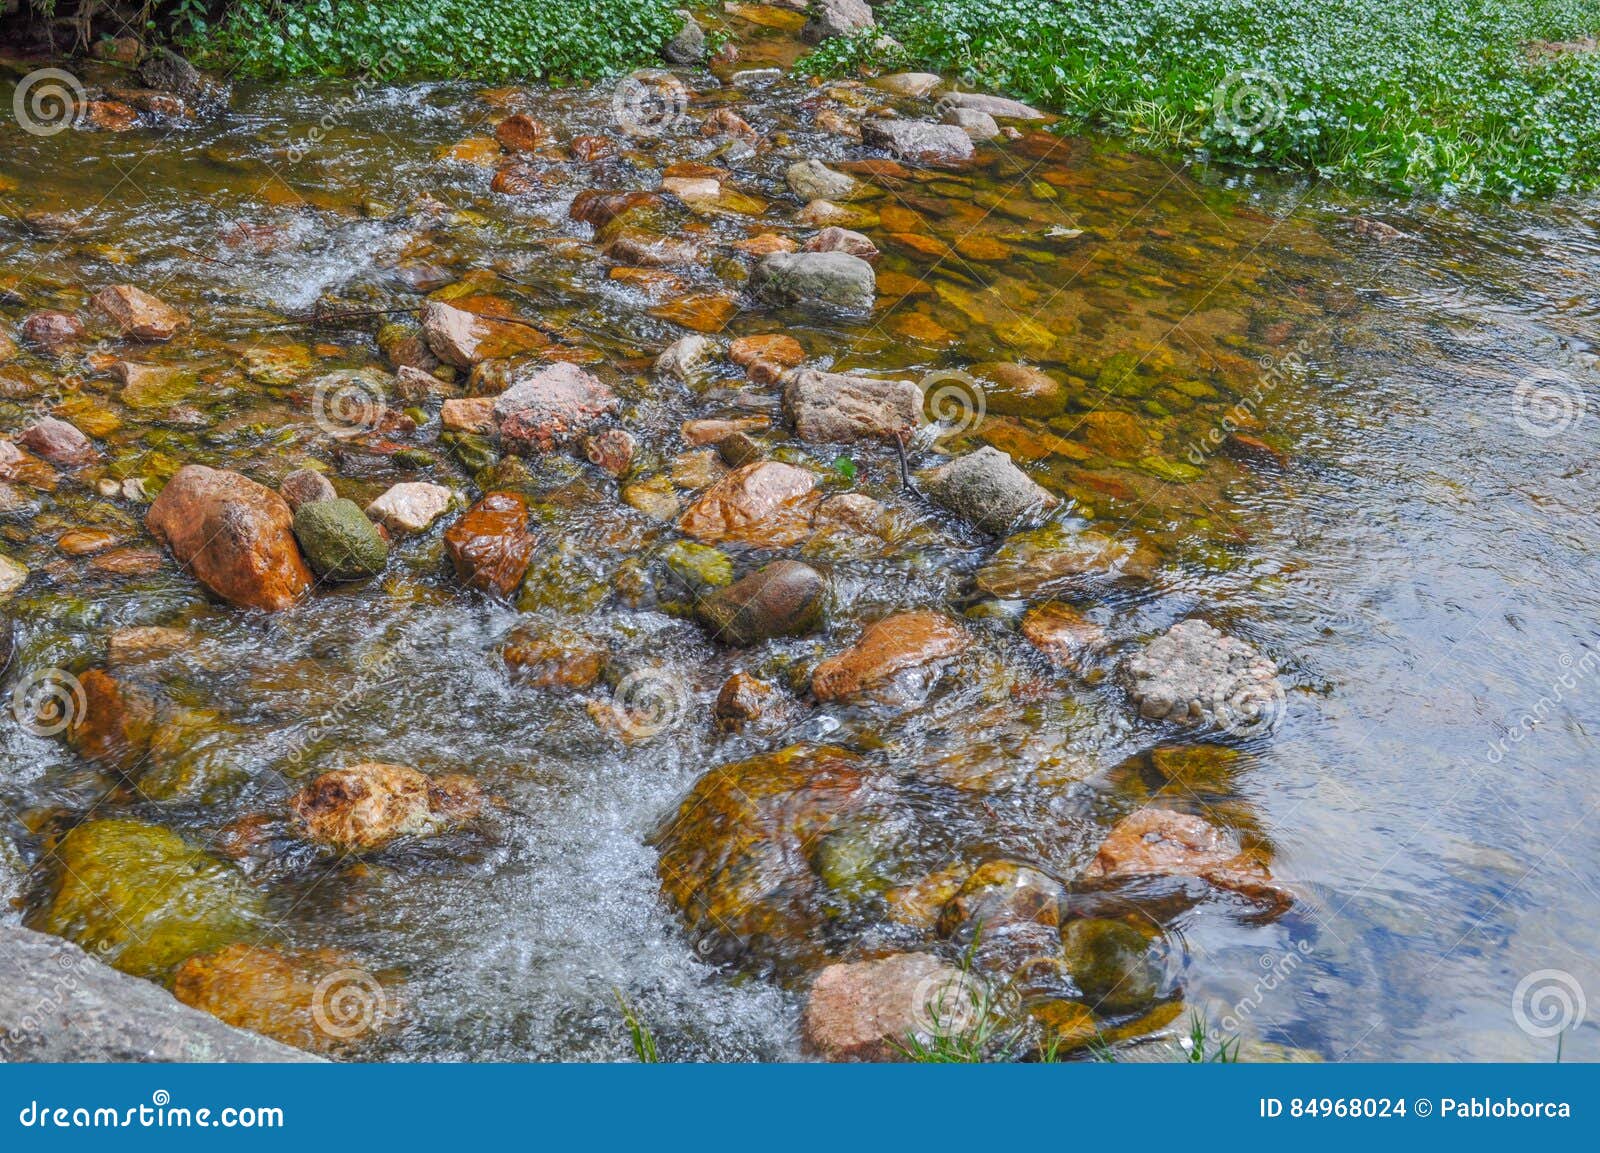 mountain river rocks in villa general belgrano, cordoba province,